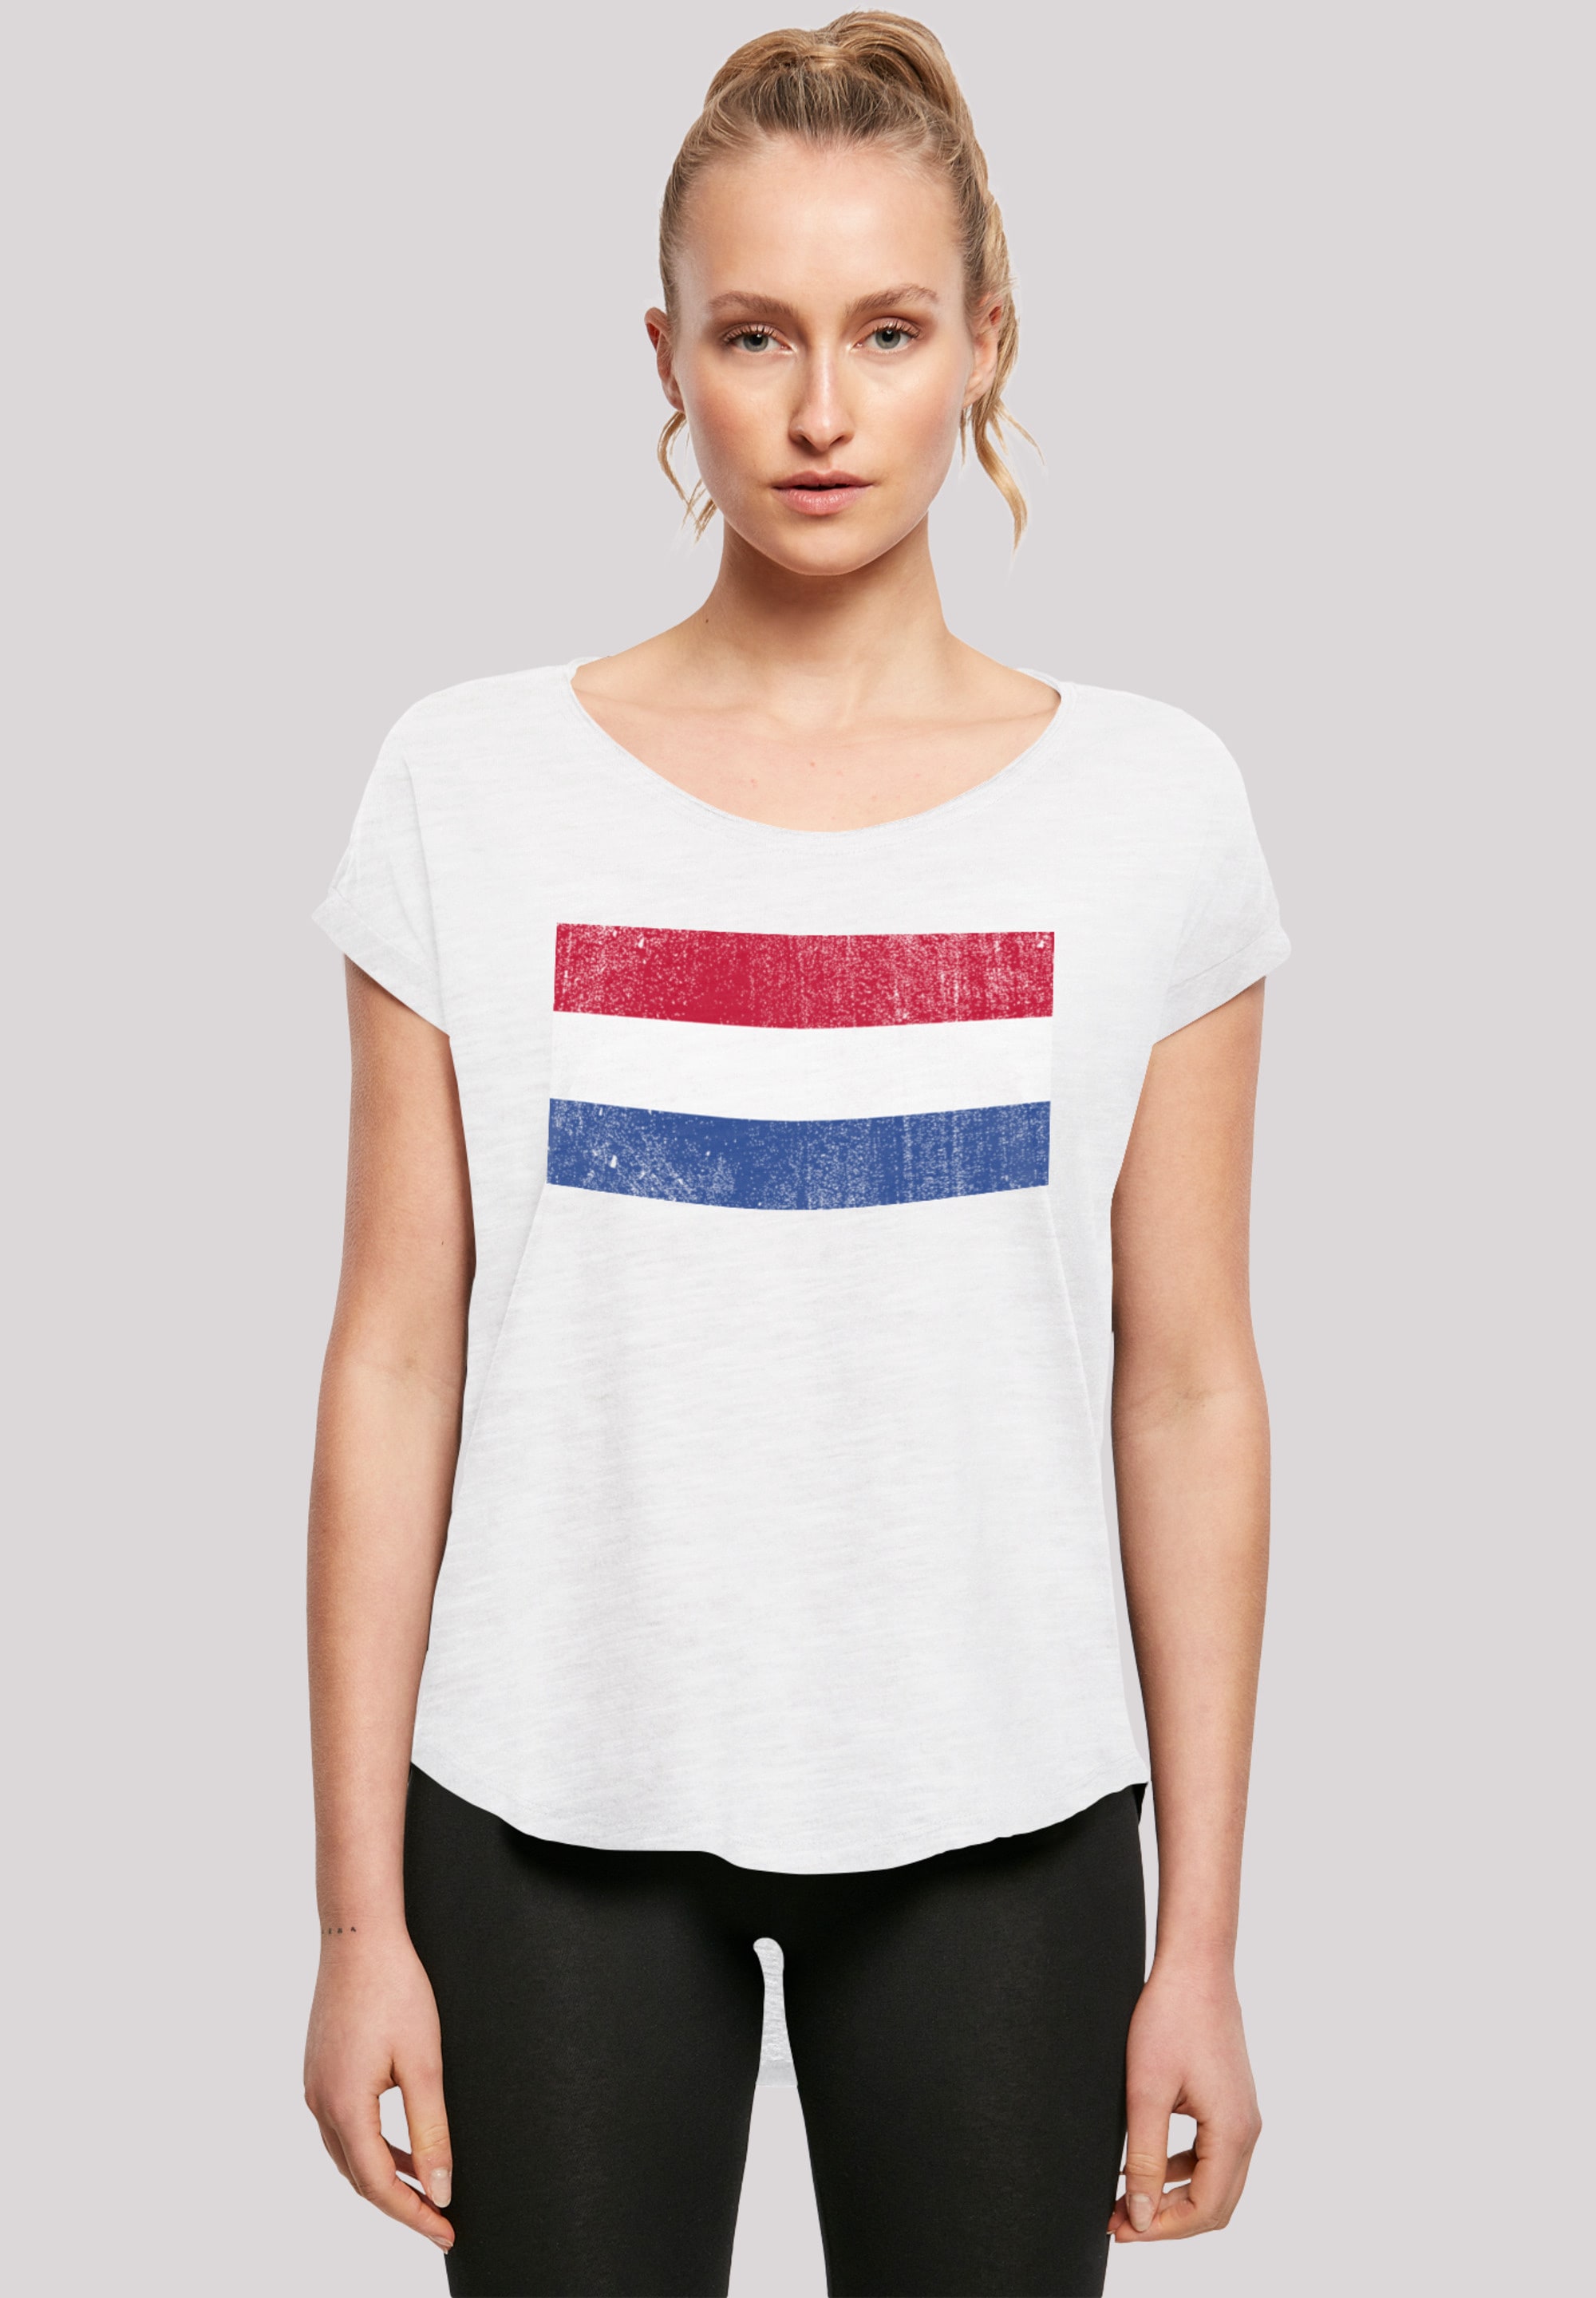 Print NIederlande Flagge T-Shirt Holland distressed«, »Netherlands shoppen F4NT4STIC